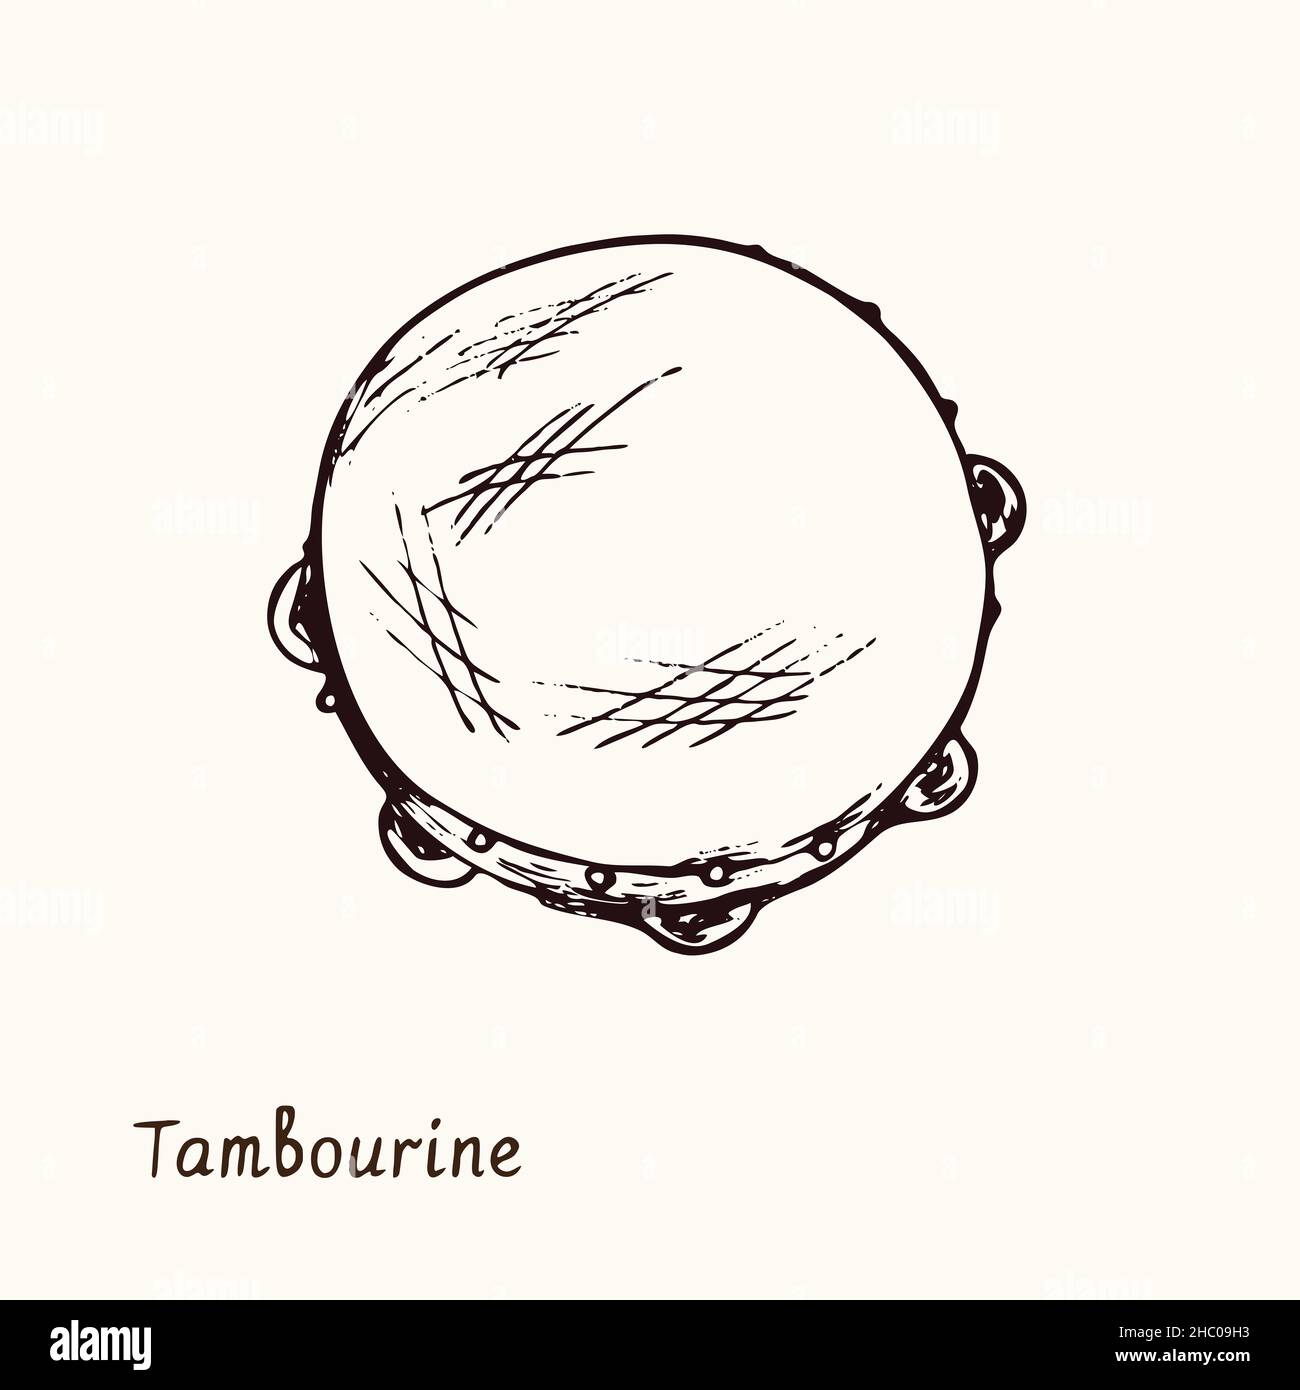 Tambourine.Dessin d'une boisée noire et blanche avec inscription. Banque D'Images